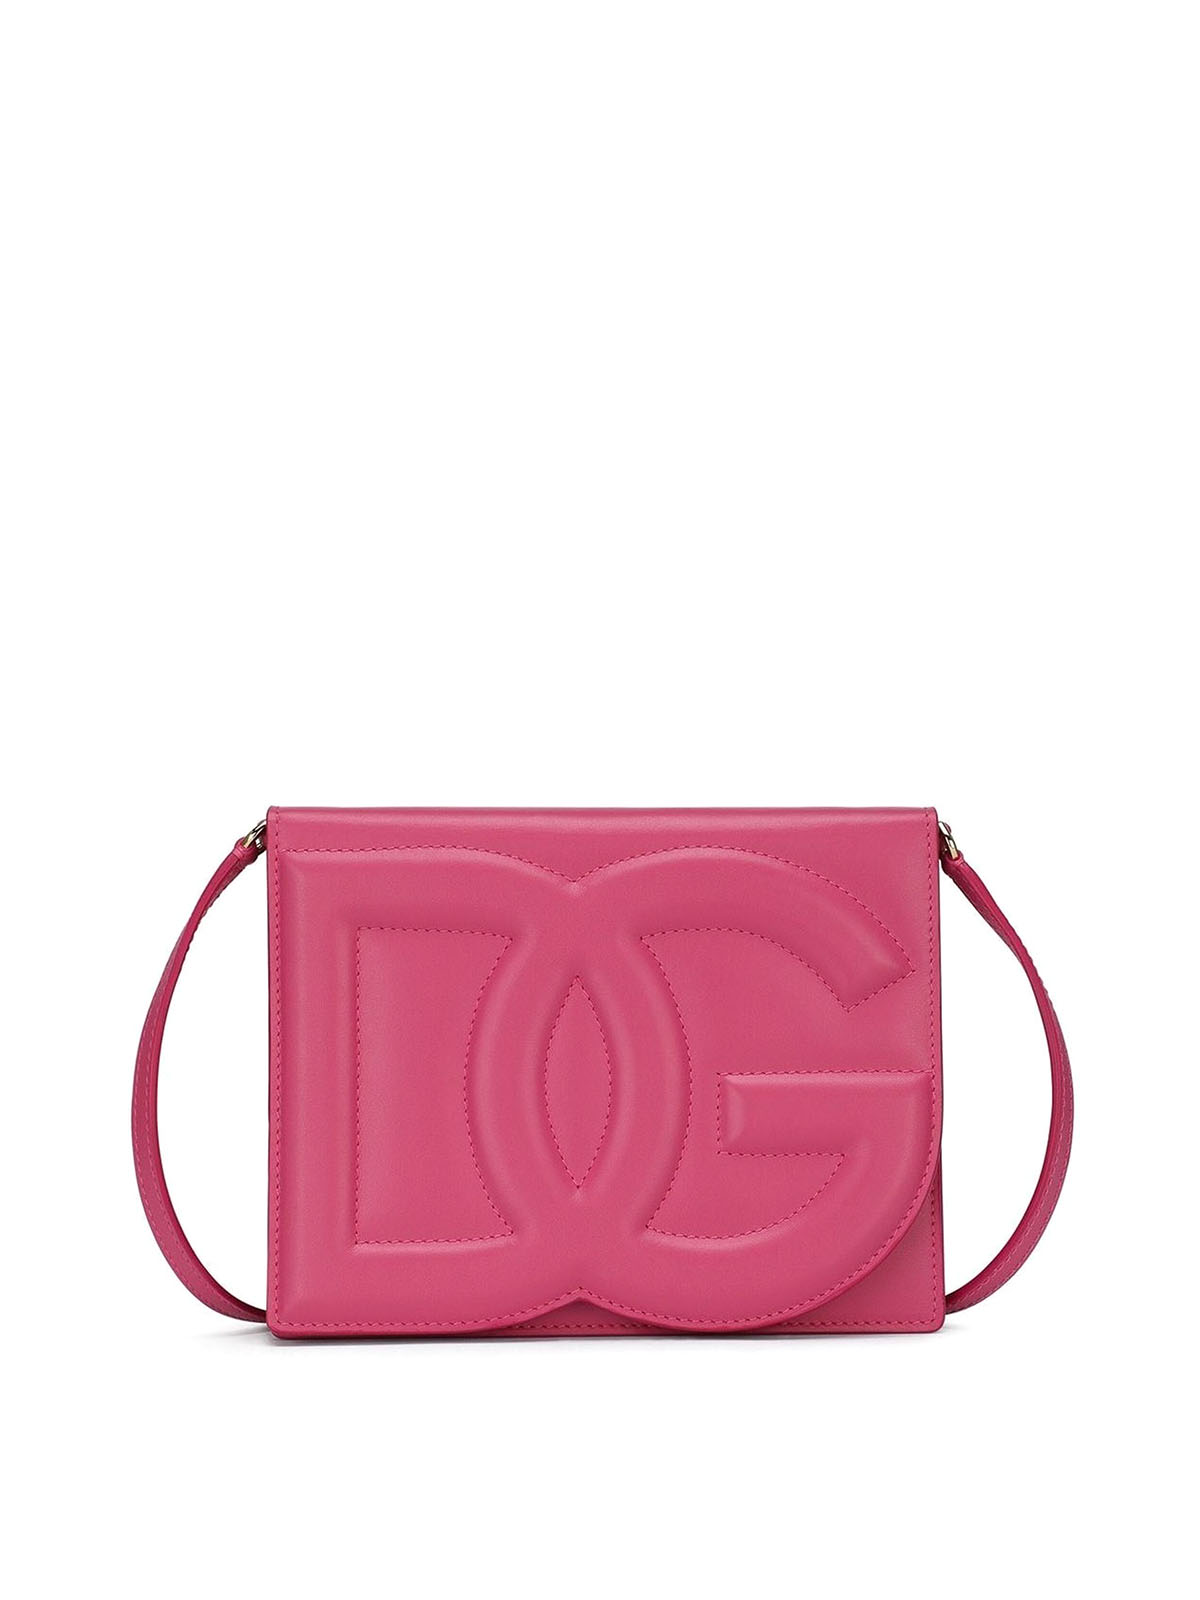 Dolce & Gabbana Leather Shoulder Bag In Rosado